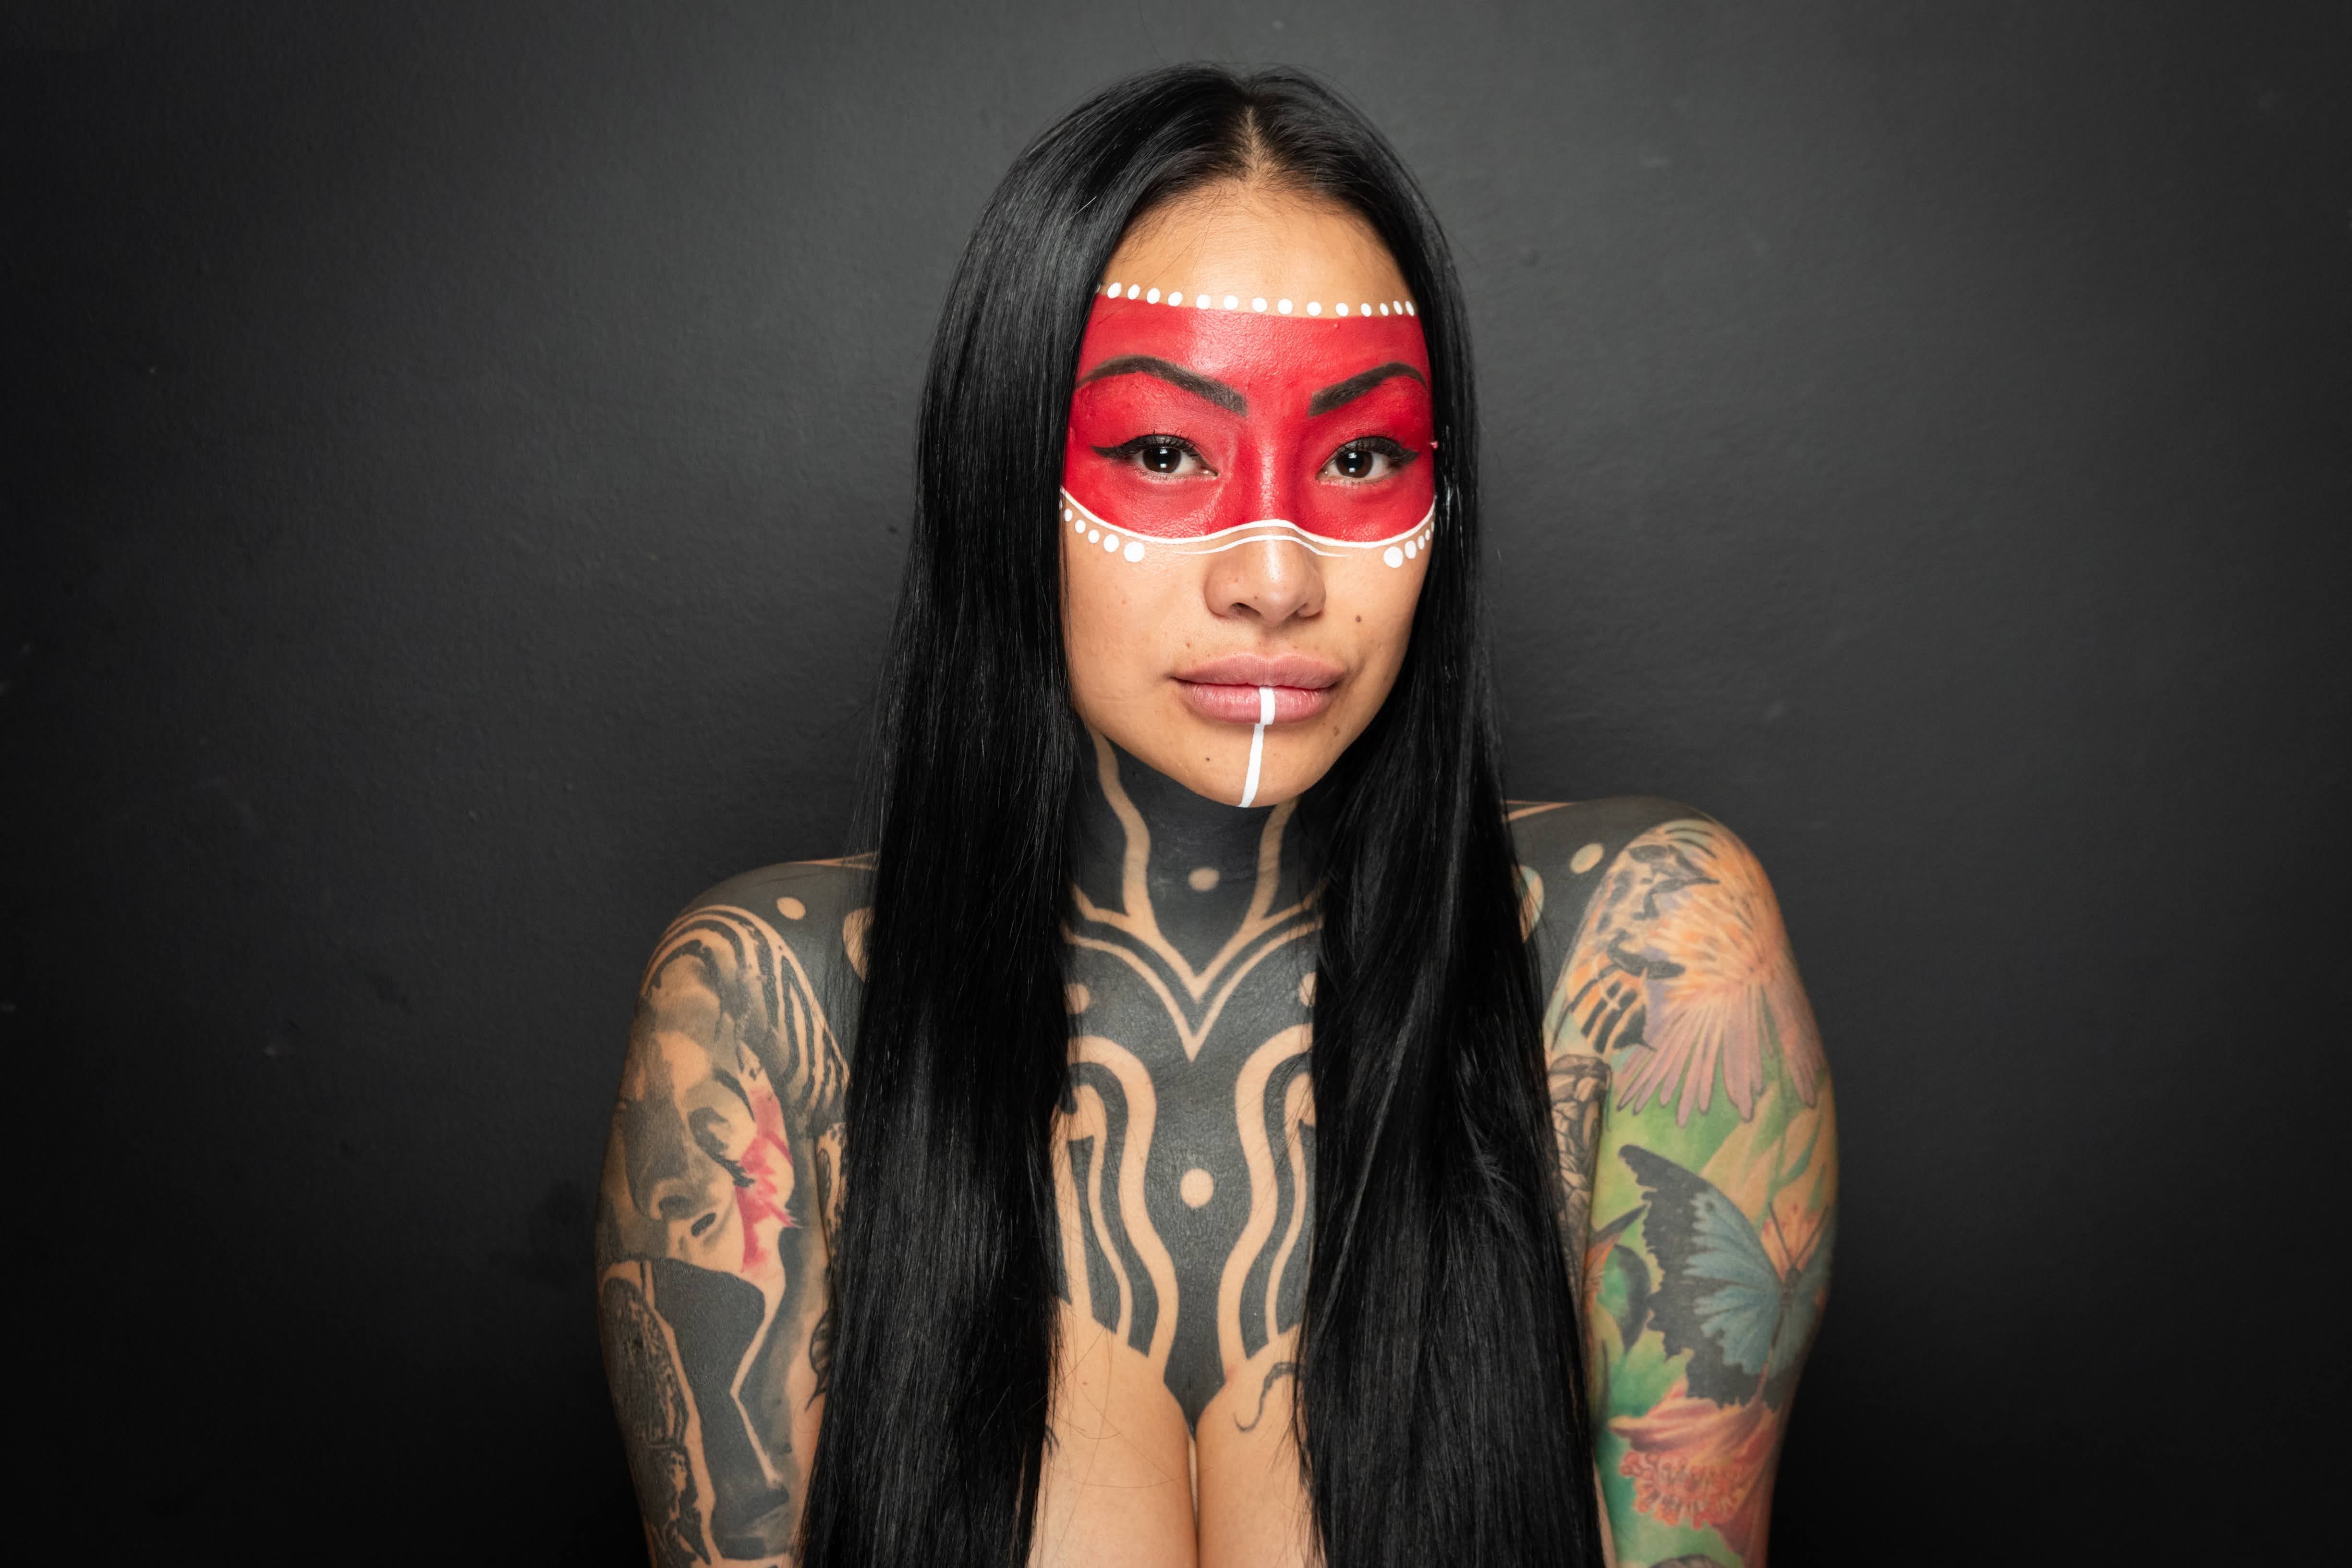 Historia de vida,  Steffy Pulce, la Diosa Inca. 
Tatuadora, maquilladora y artista
Foto: Ignacio Blanco / Los Andes